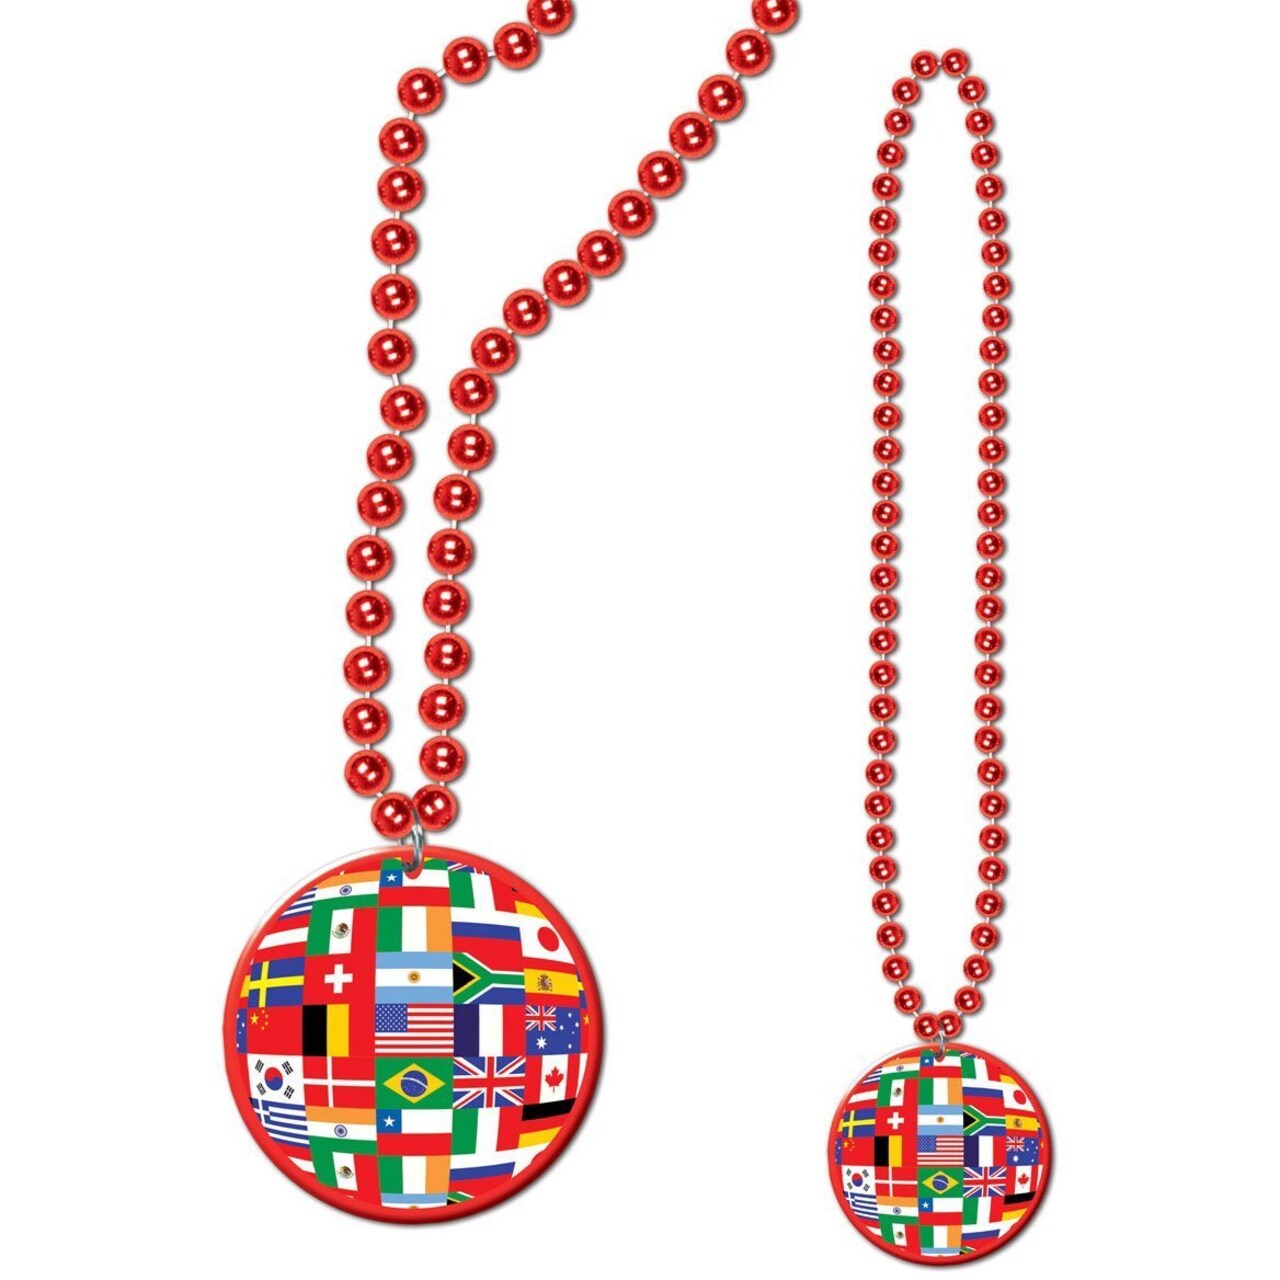 Beads w/International Flag Medallion (Pack of 12)